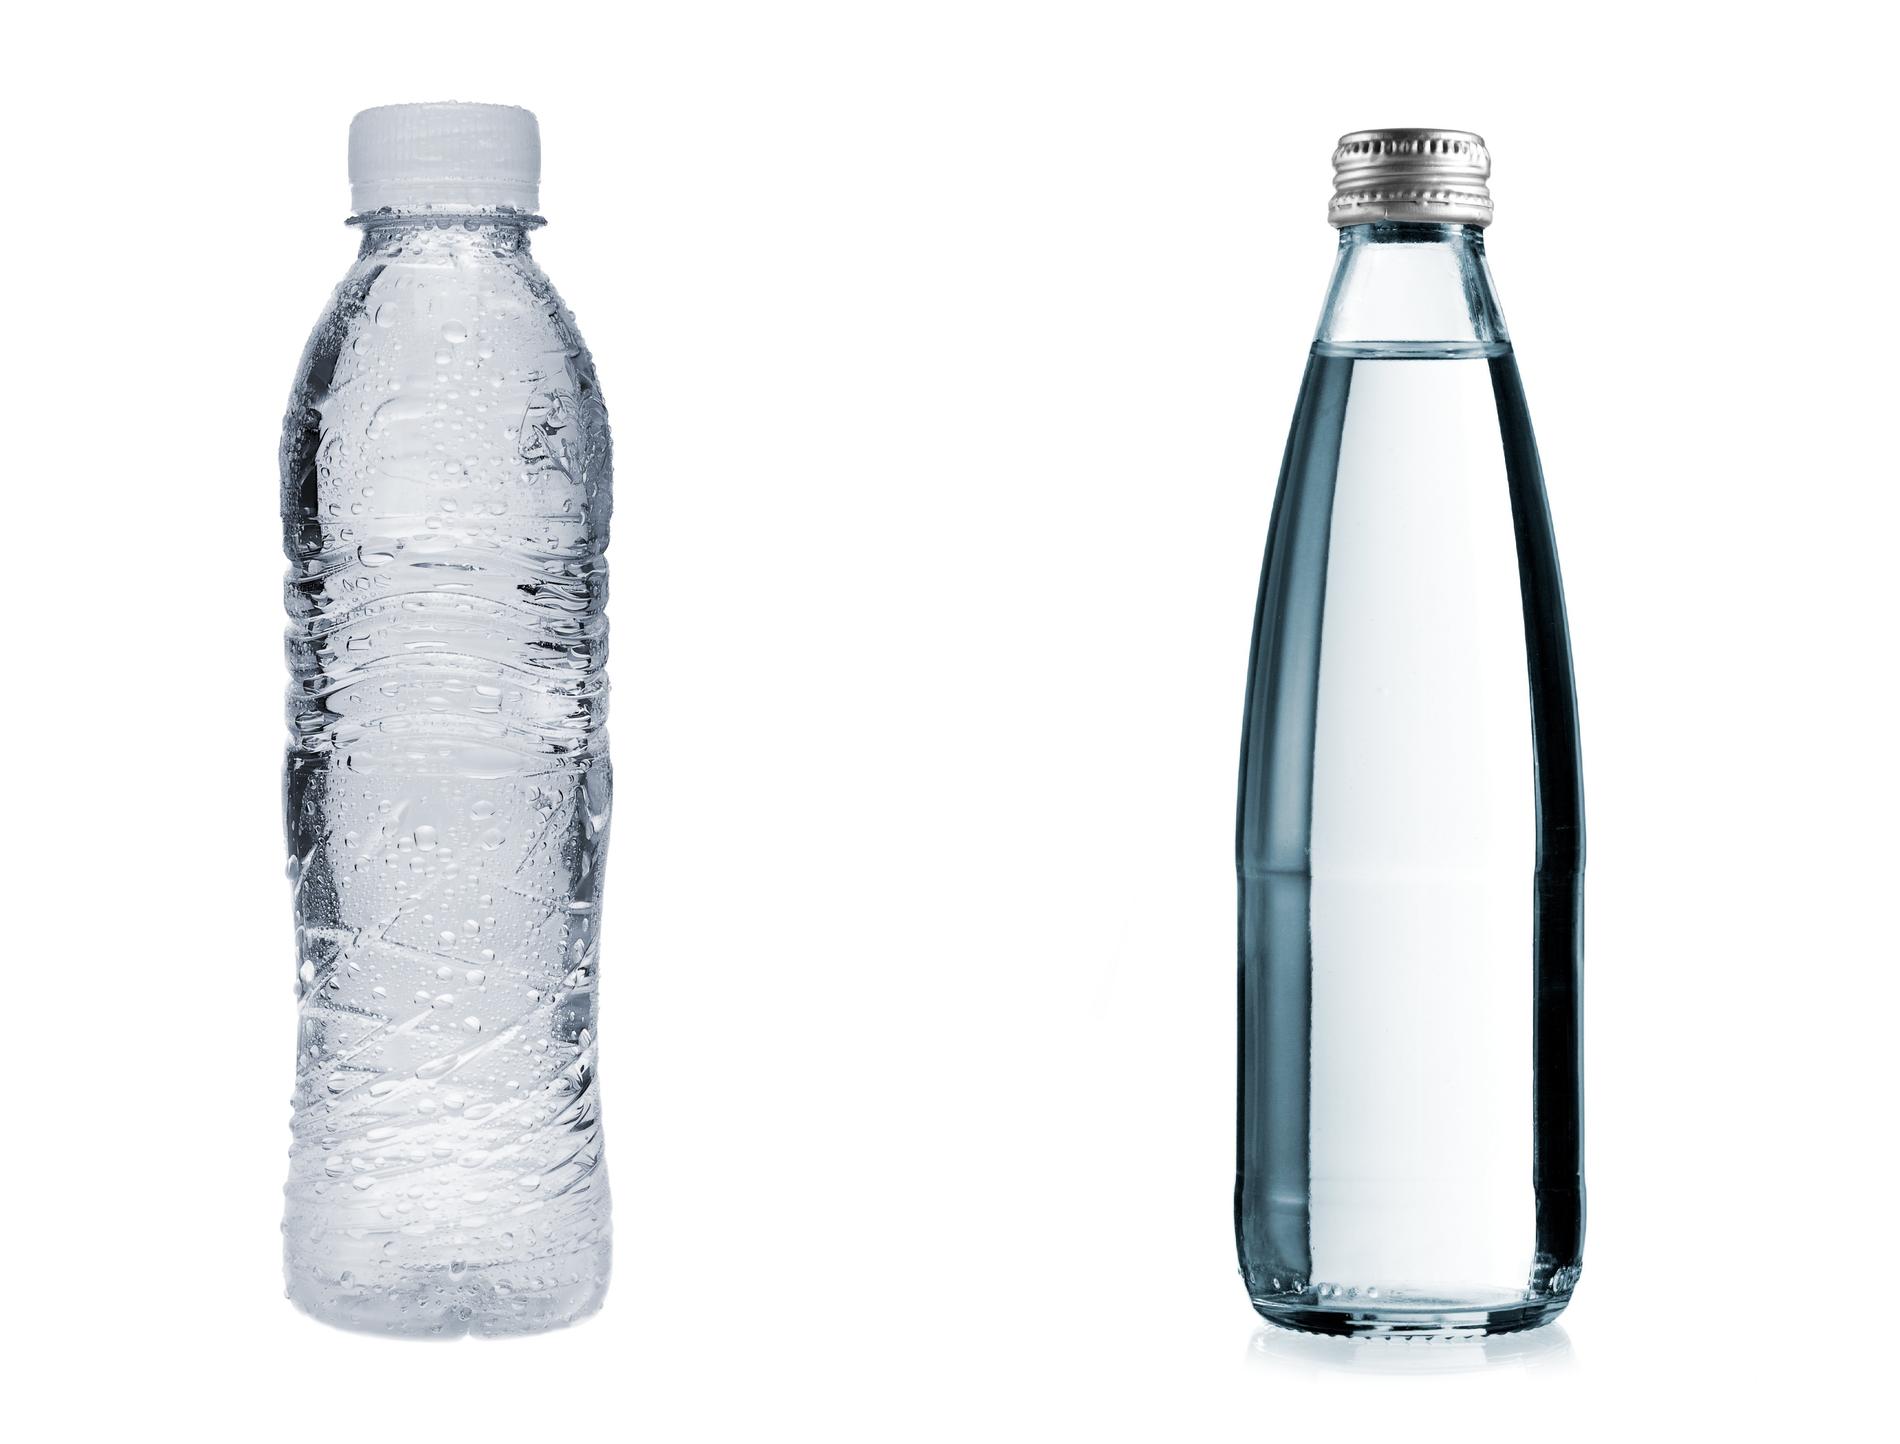 BYTT UT: Bruk en vannflaske i glass eller metall som du bruker om og om igjen, i stedet for å kjøpe nye plastflasker i butikken.